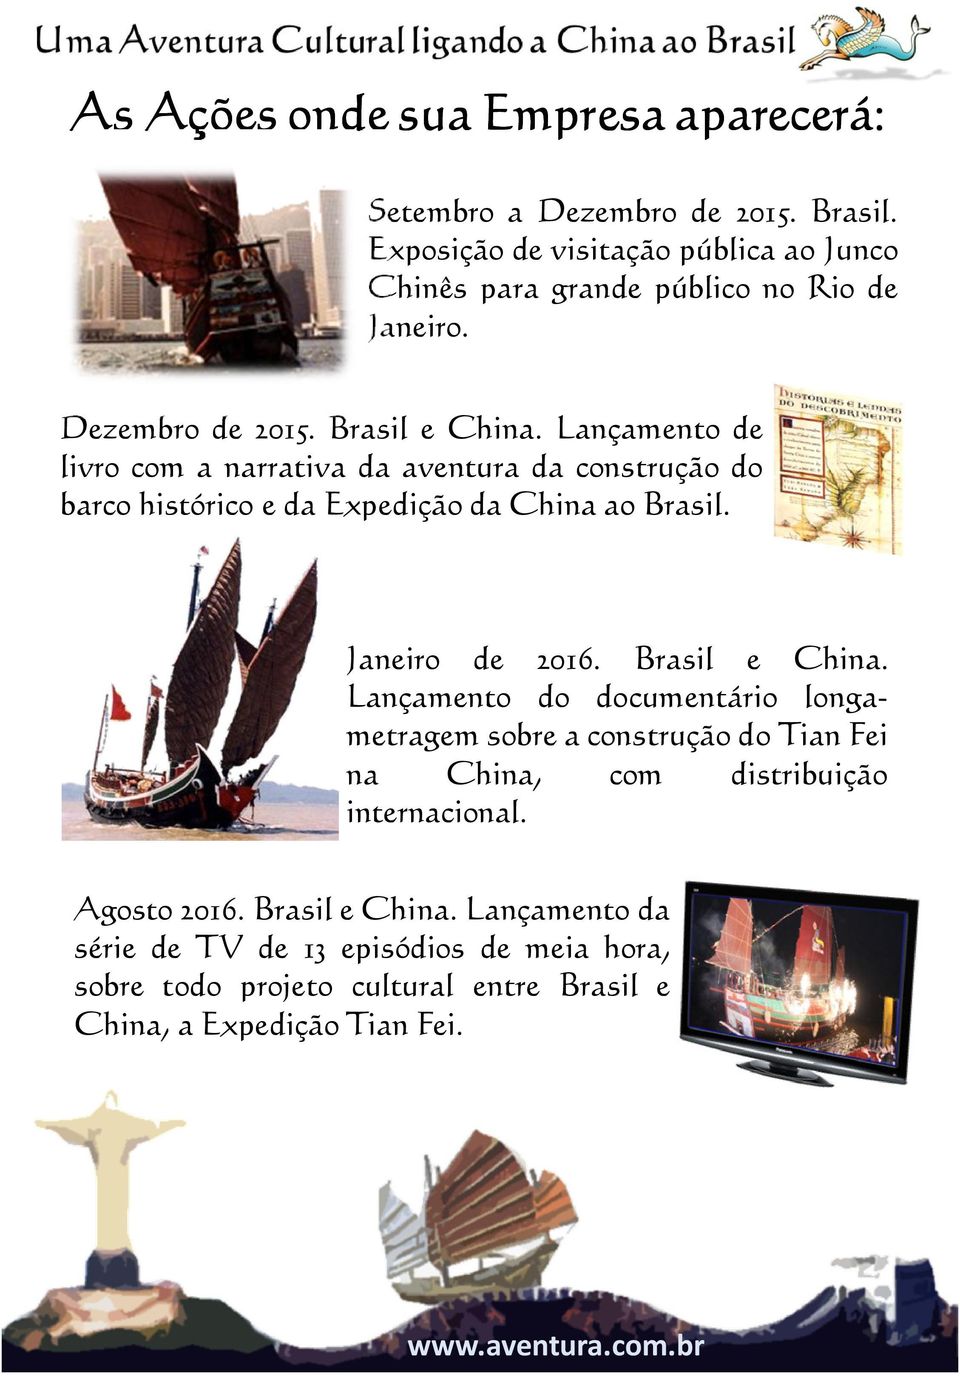 Lançamento de livro com a narrativa da aventura da construção do barco histórico e da Expedição da China ao Brasil. Janeiro de 2016. Brasil e China.